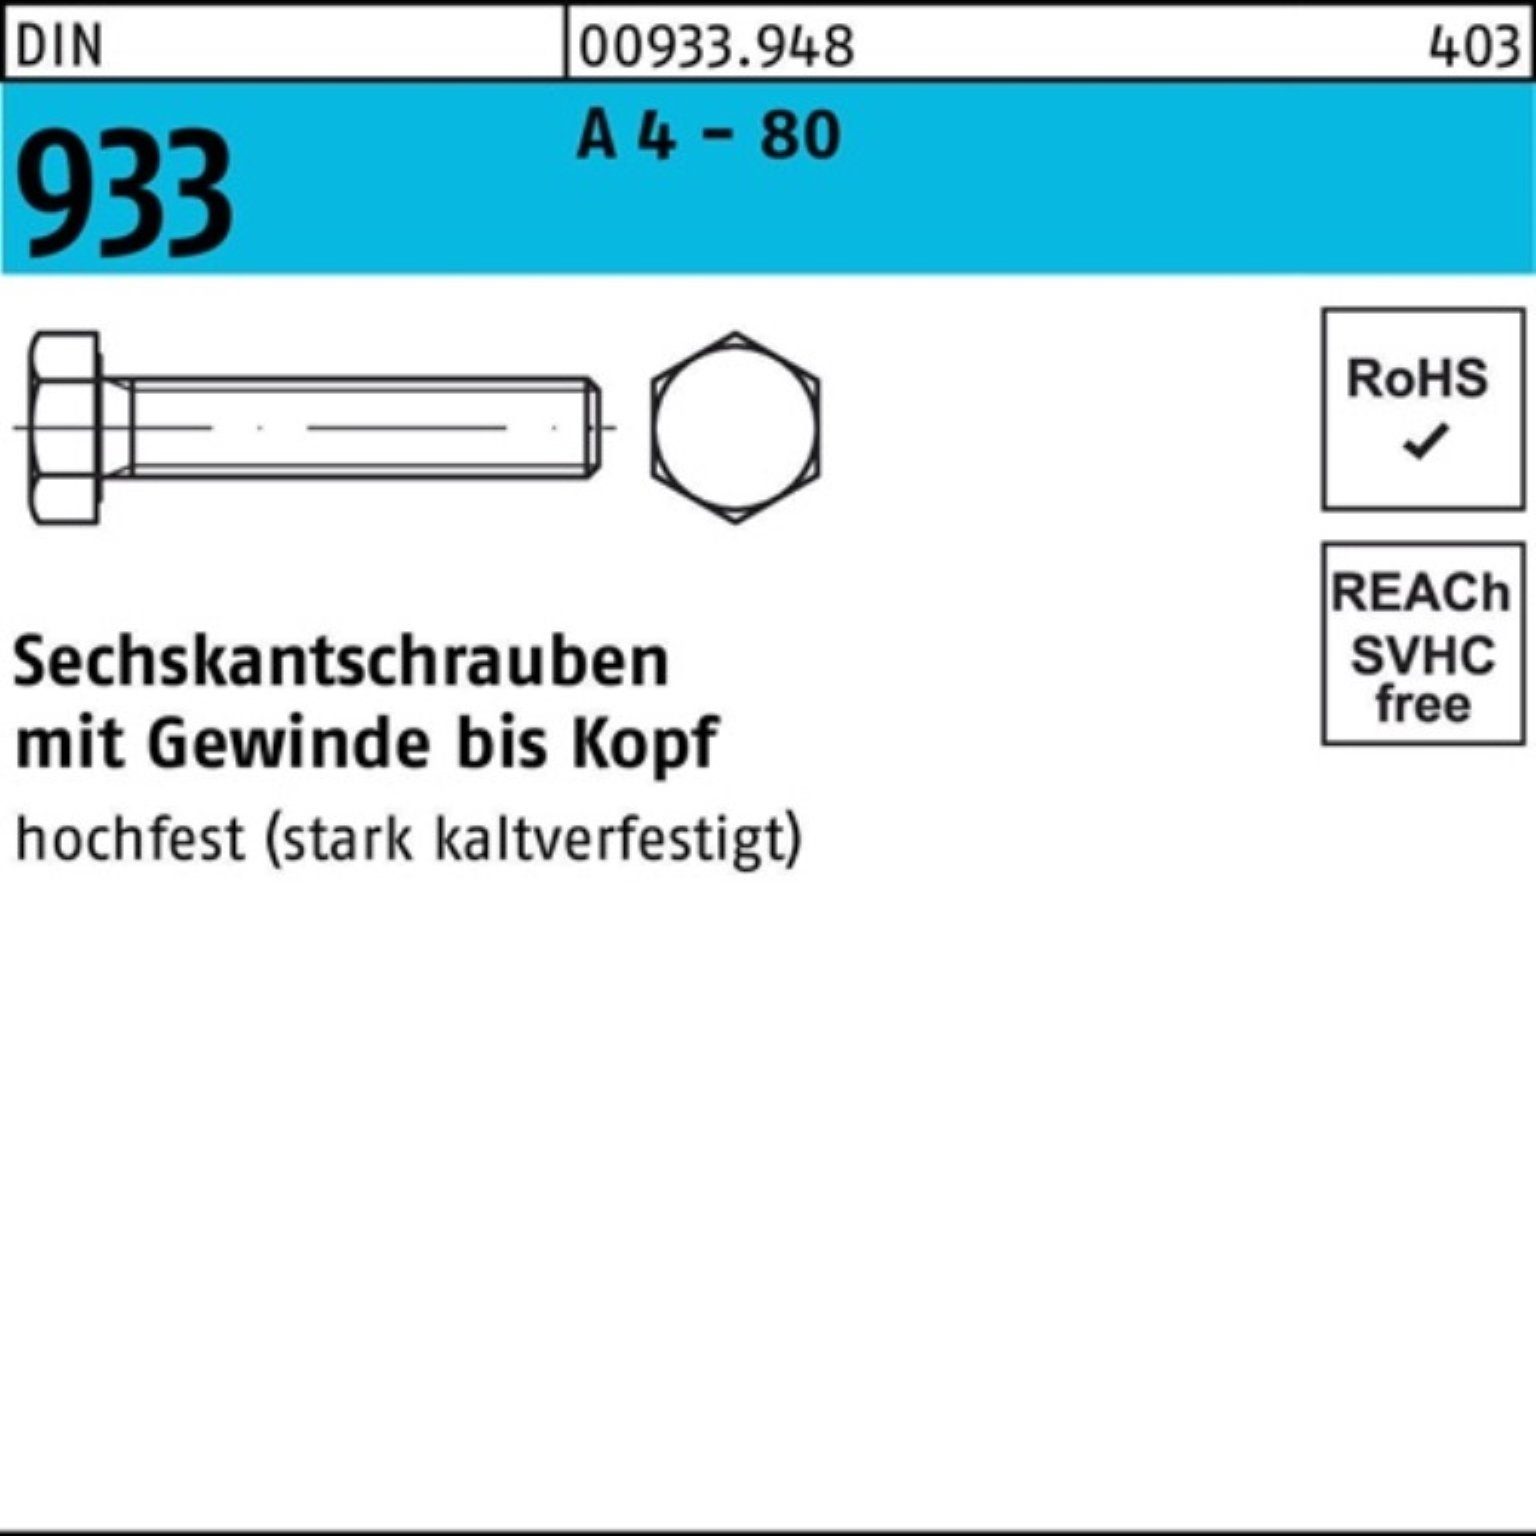 Reyher Sechskantschraube 100er Pack Sechskantschraube DIN 933 VG M16x 190 A 4 - 80 1 Stück DIN